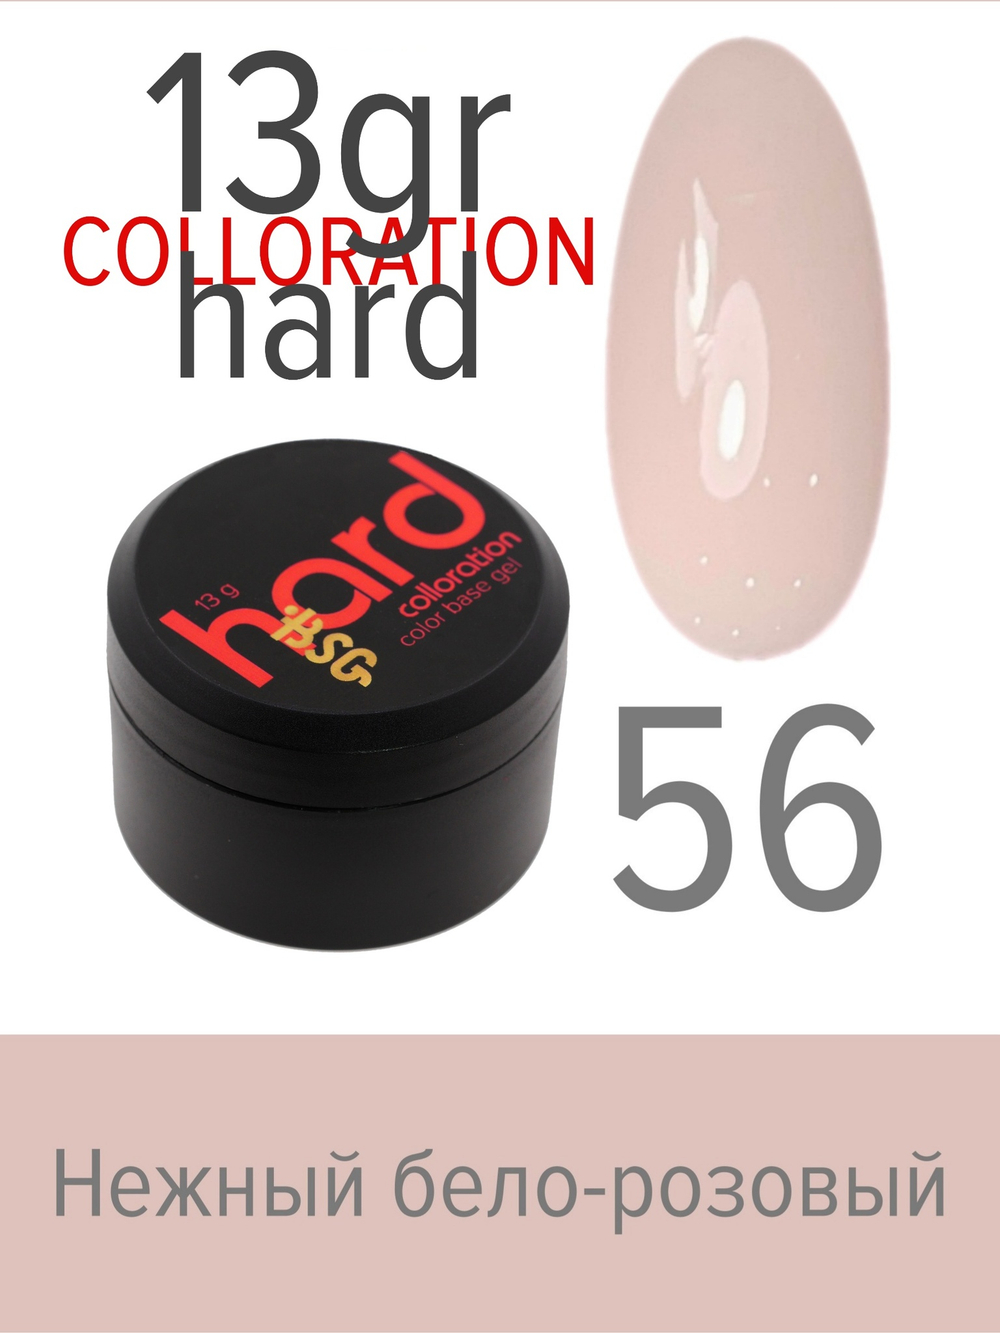 Цветная жесткая база Colloration Hard №56 - Нежный бело-розовый оттенок (13 г)